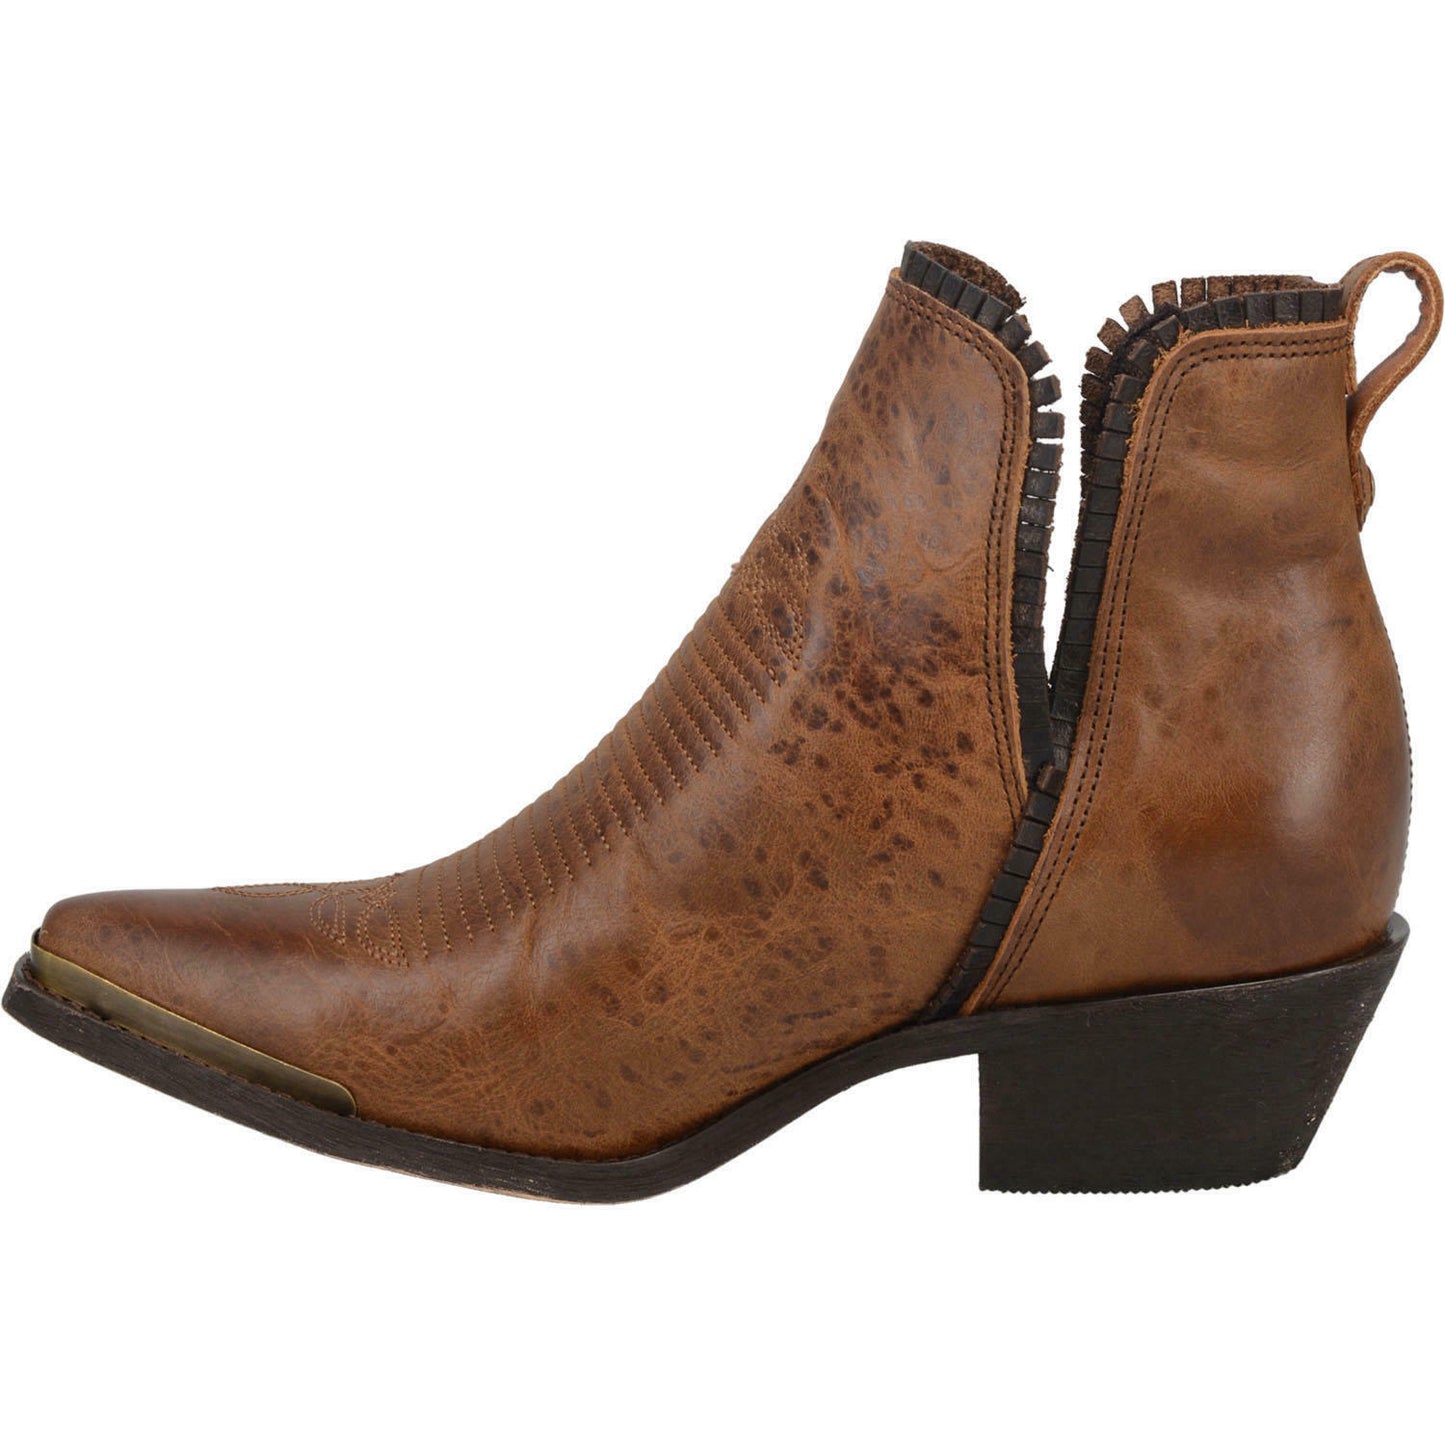 Laredo Ladies Fringette Brown Leather Booties 3173